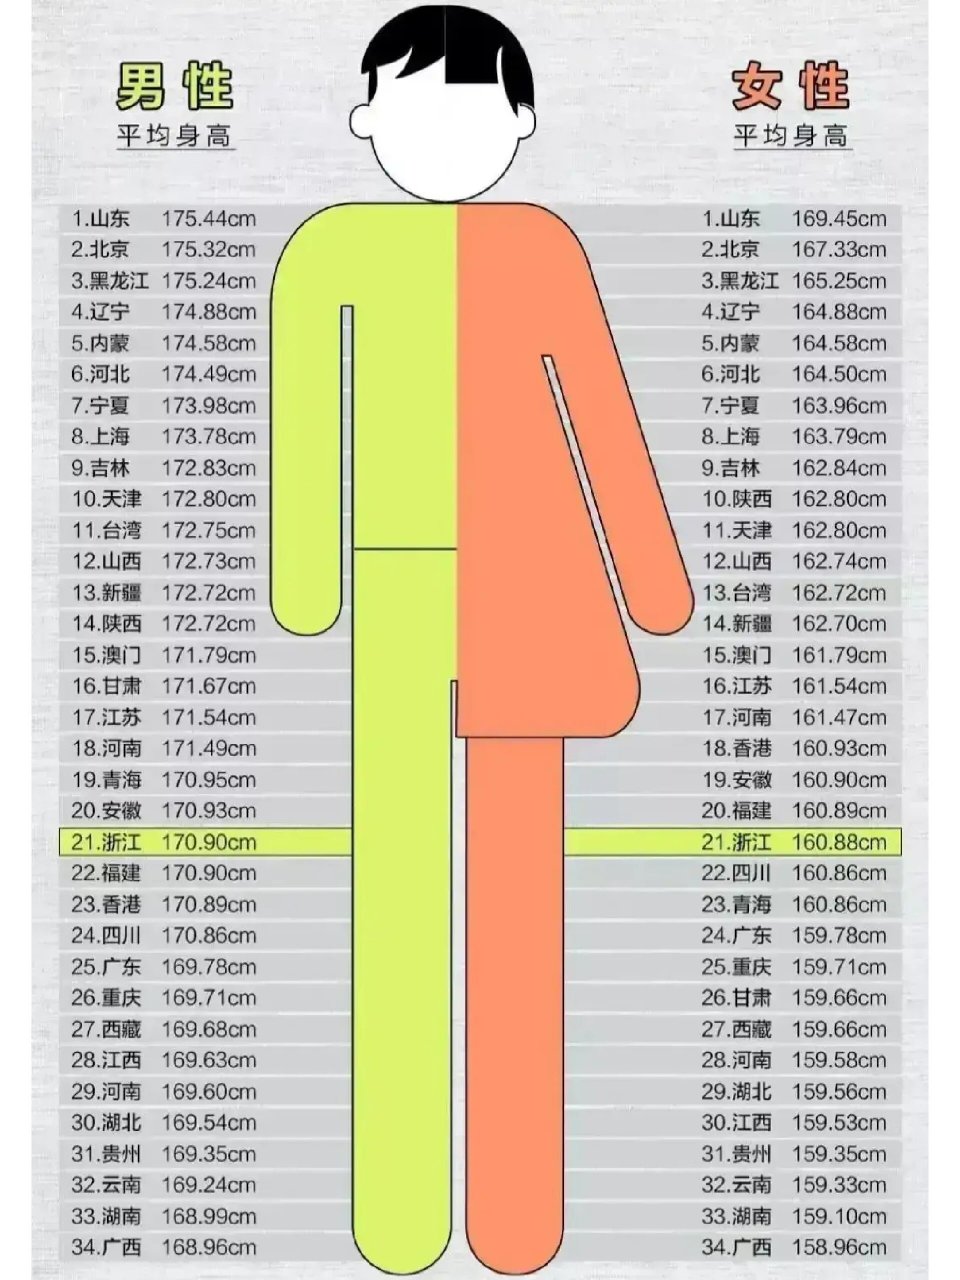 湖南女性平均身高图片